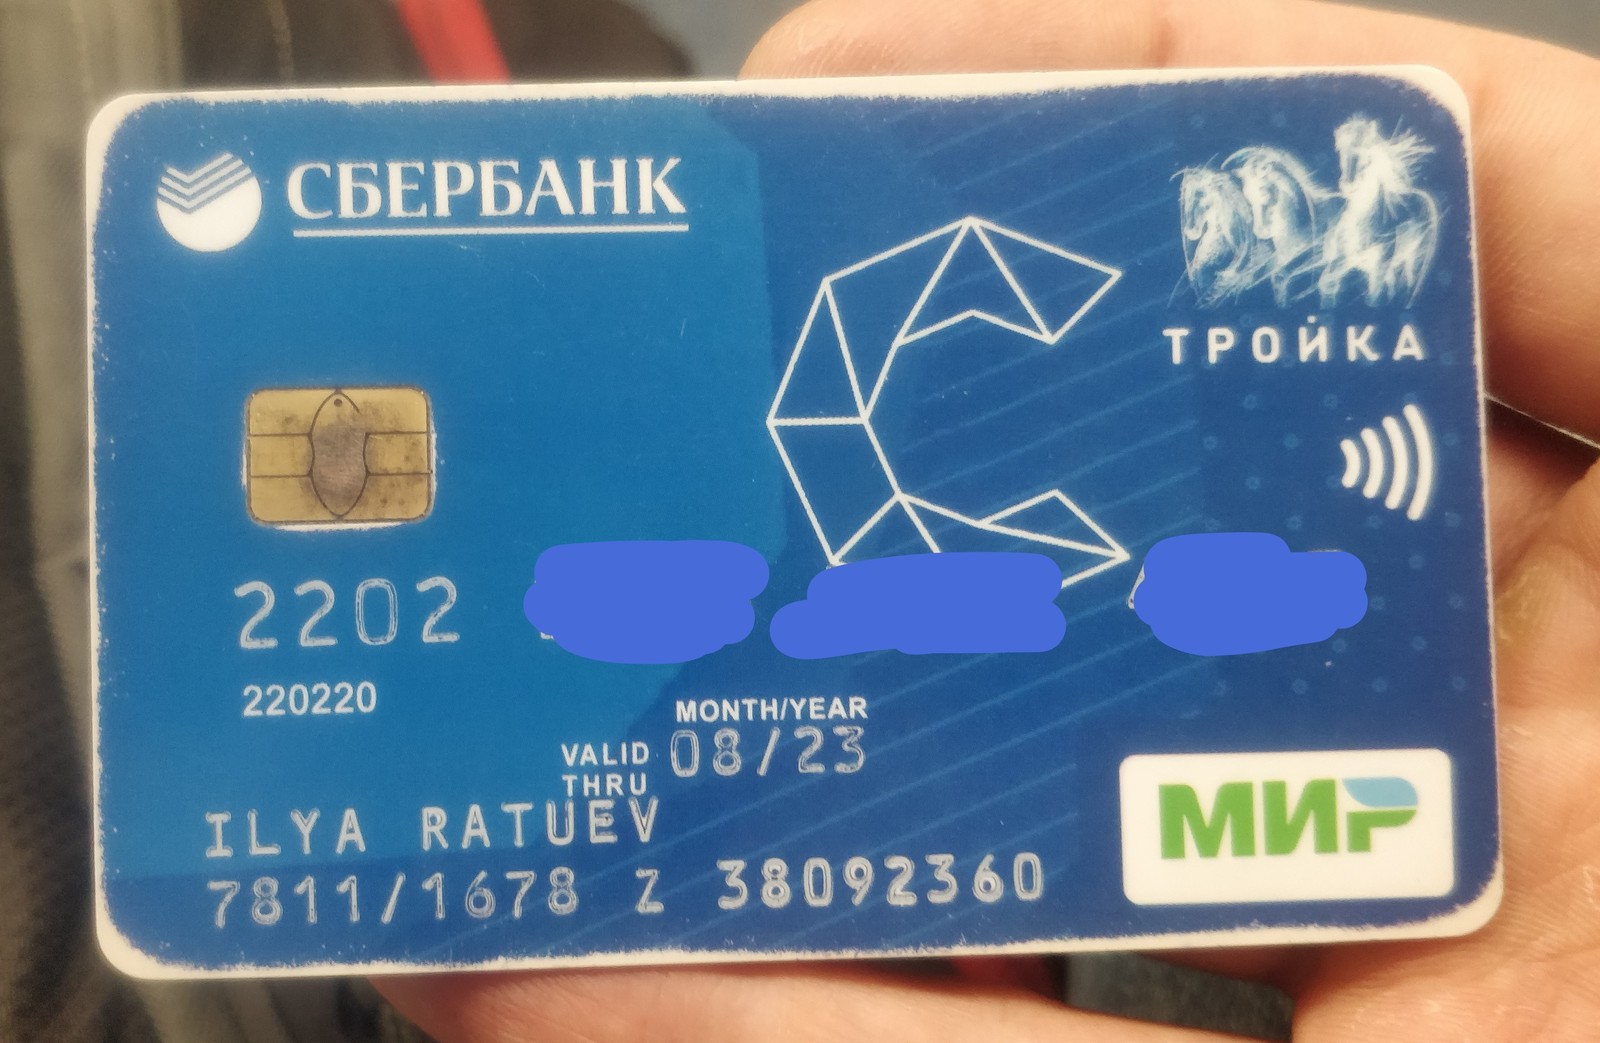 MGSU student campus card found[Owner found] - Moscow, Metro, Found, MGSU